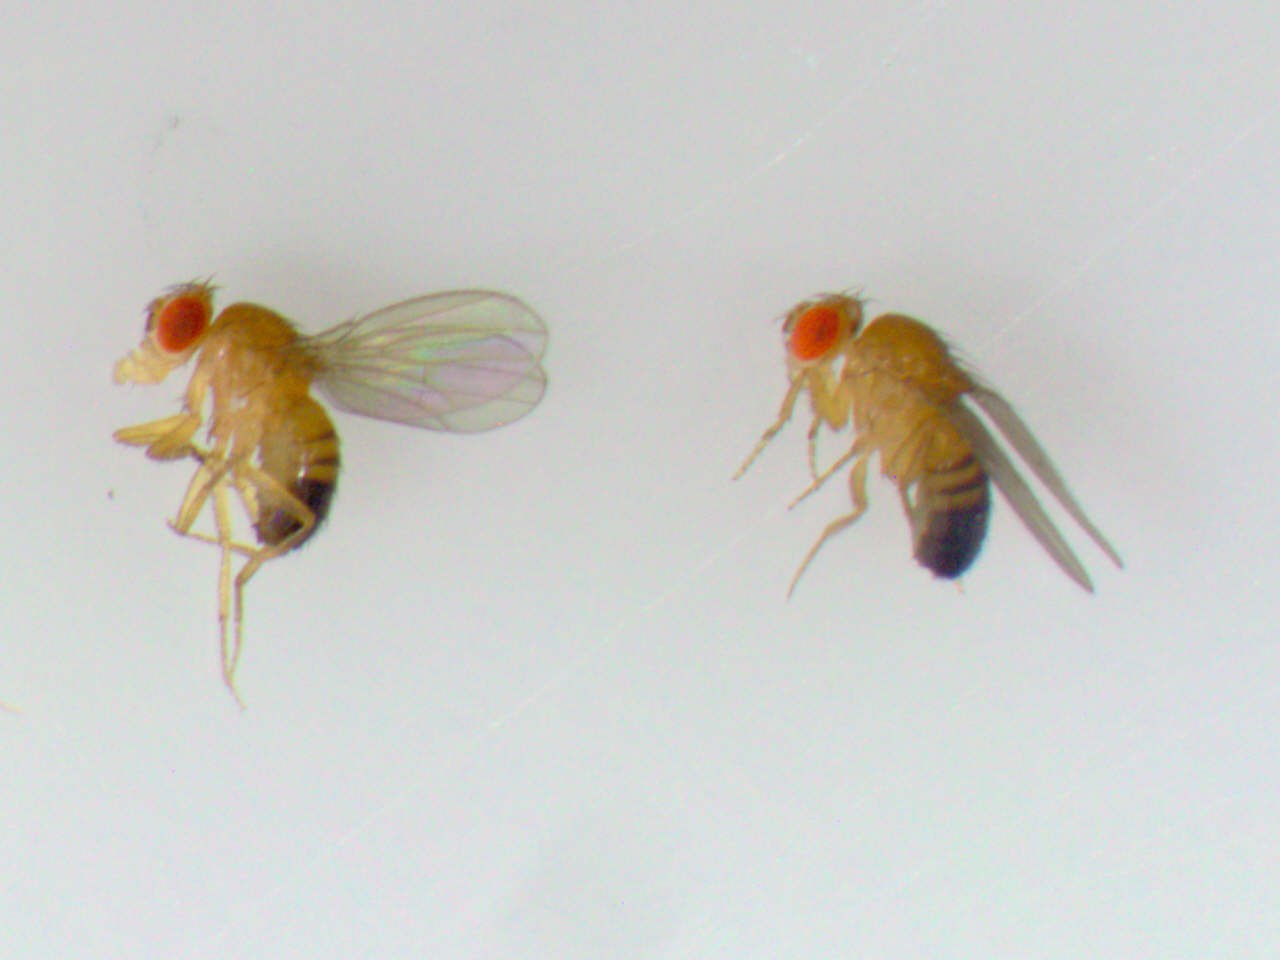 Drosophila-Fliegen: